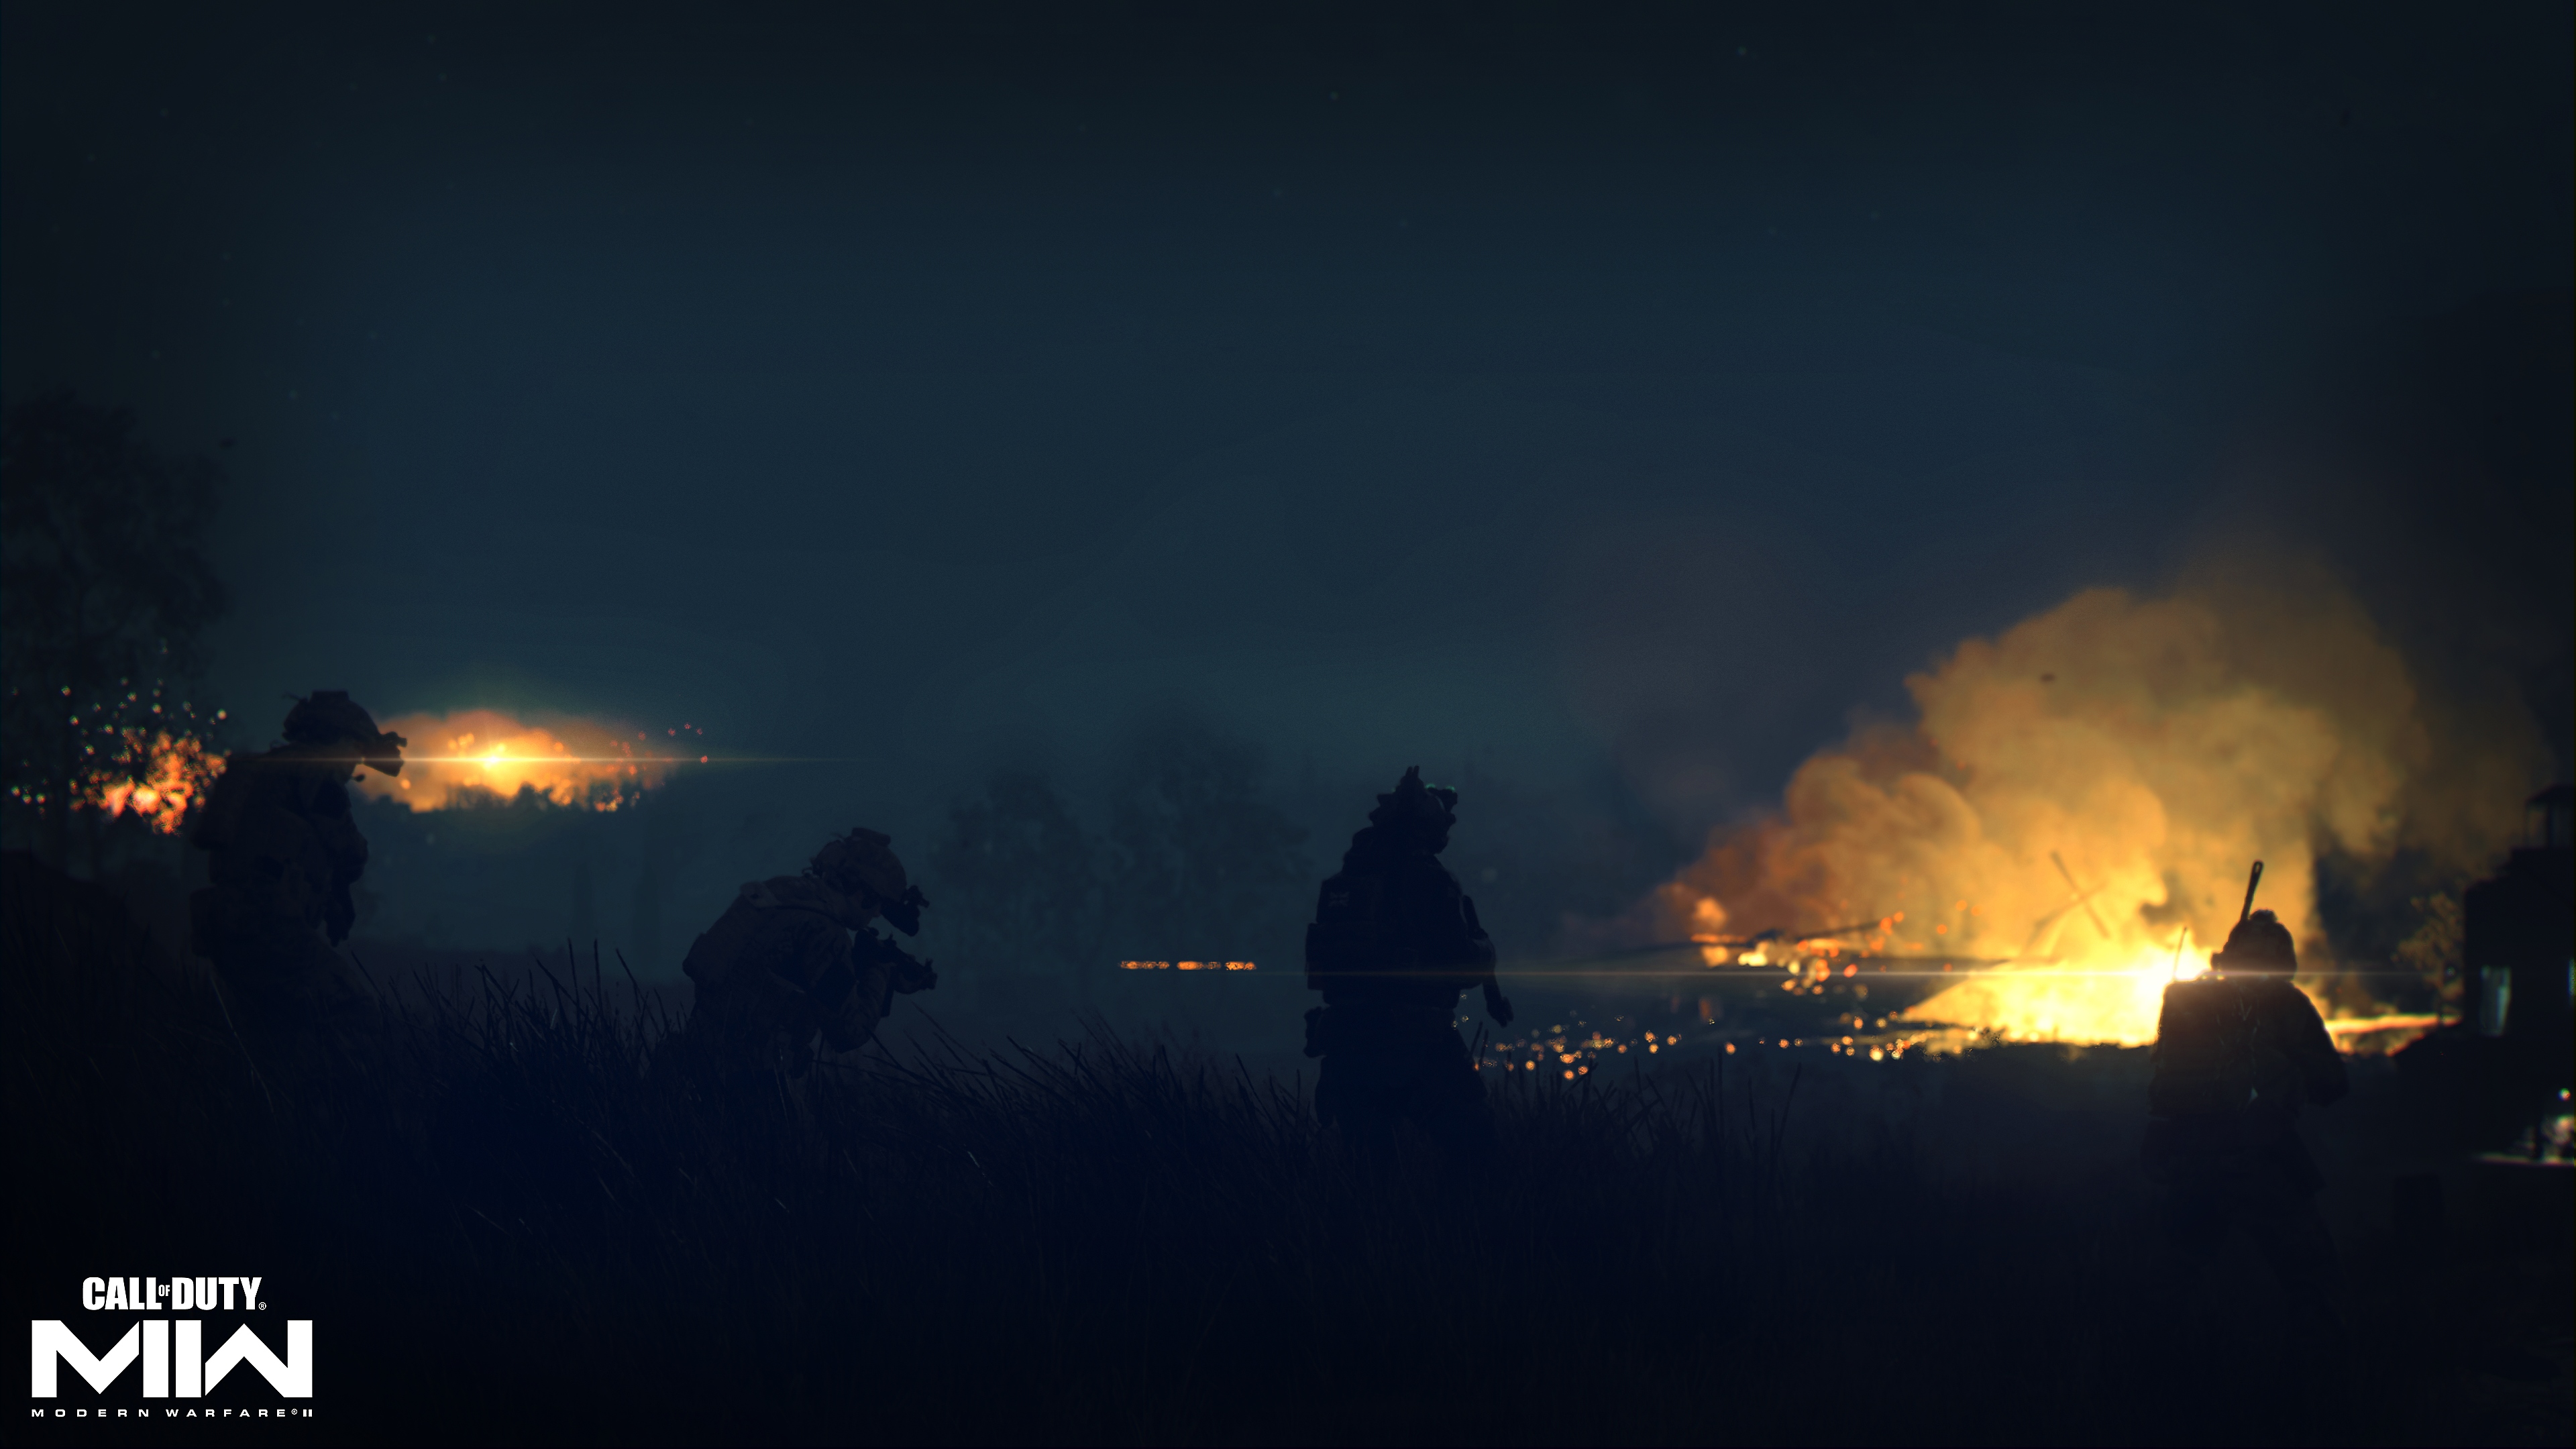 Call of Duty: Modern Warfare 2 2022 екранна снимка, показваща огън в далечината на тъмен пейзаж